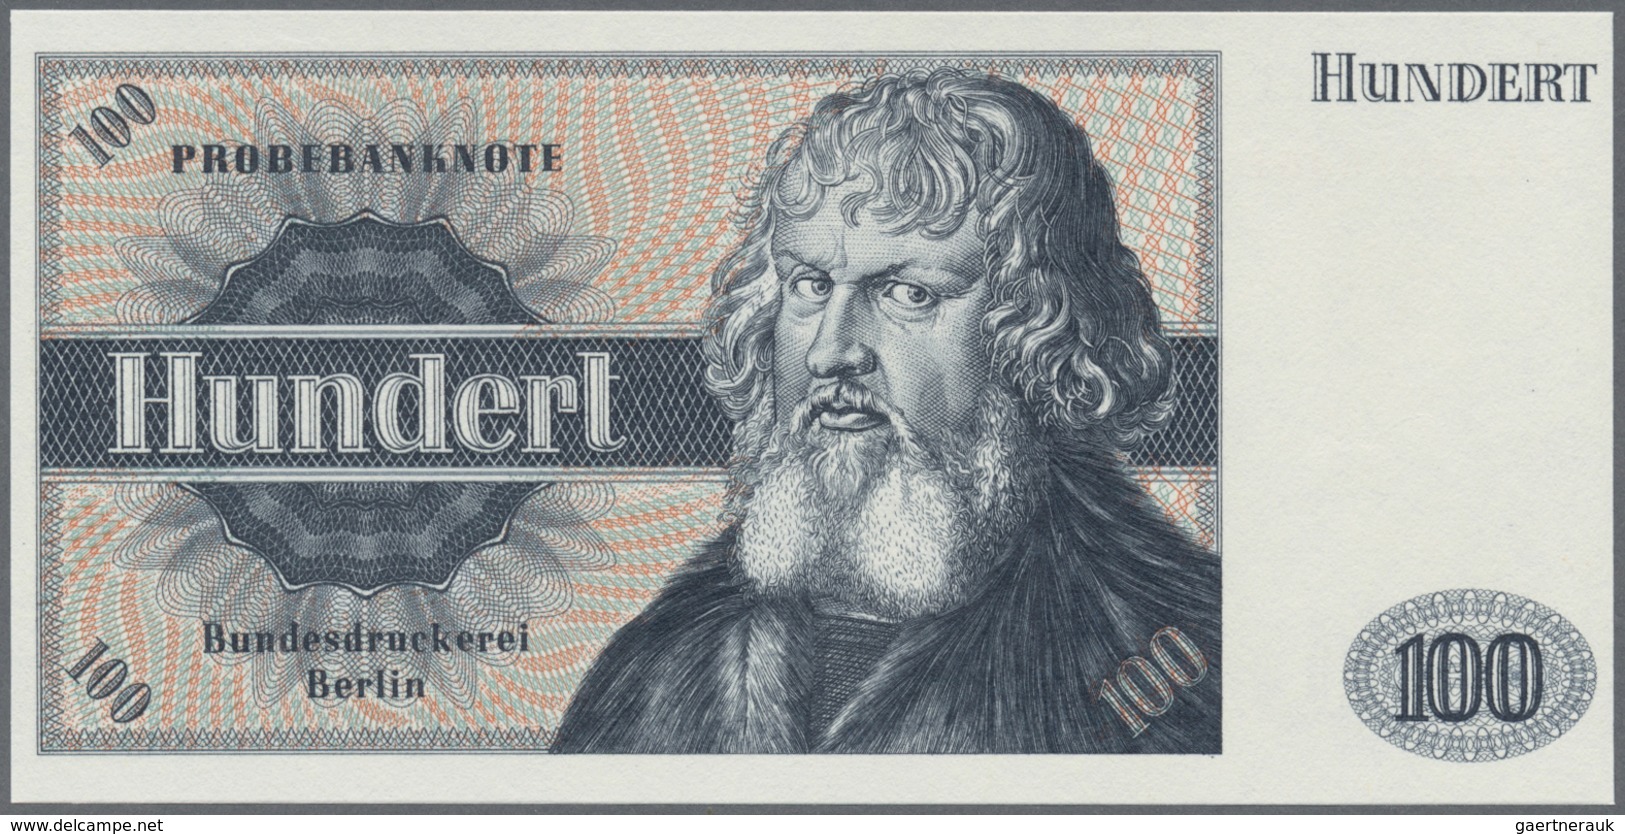 Testbanknoten: Germany: Bundesdruckerei Test Note "100 Units" With Portrait "Holzschuher", Intaglio - Specimen